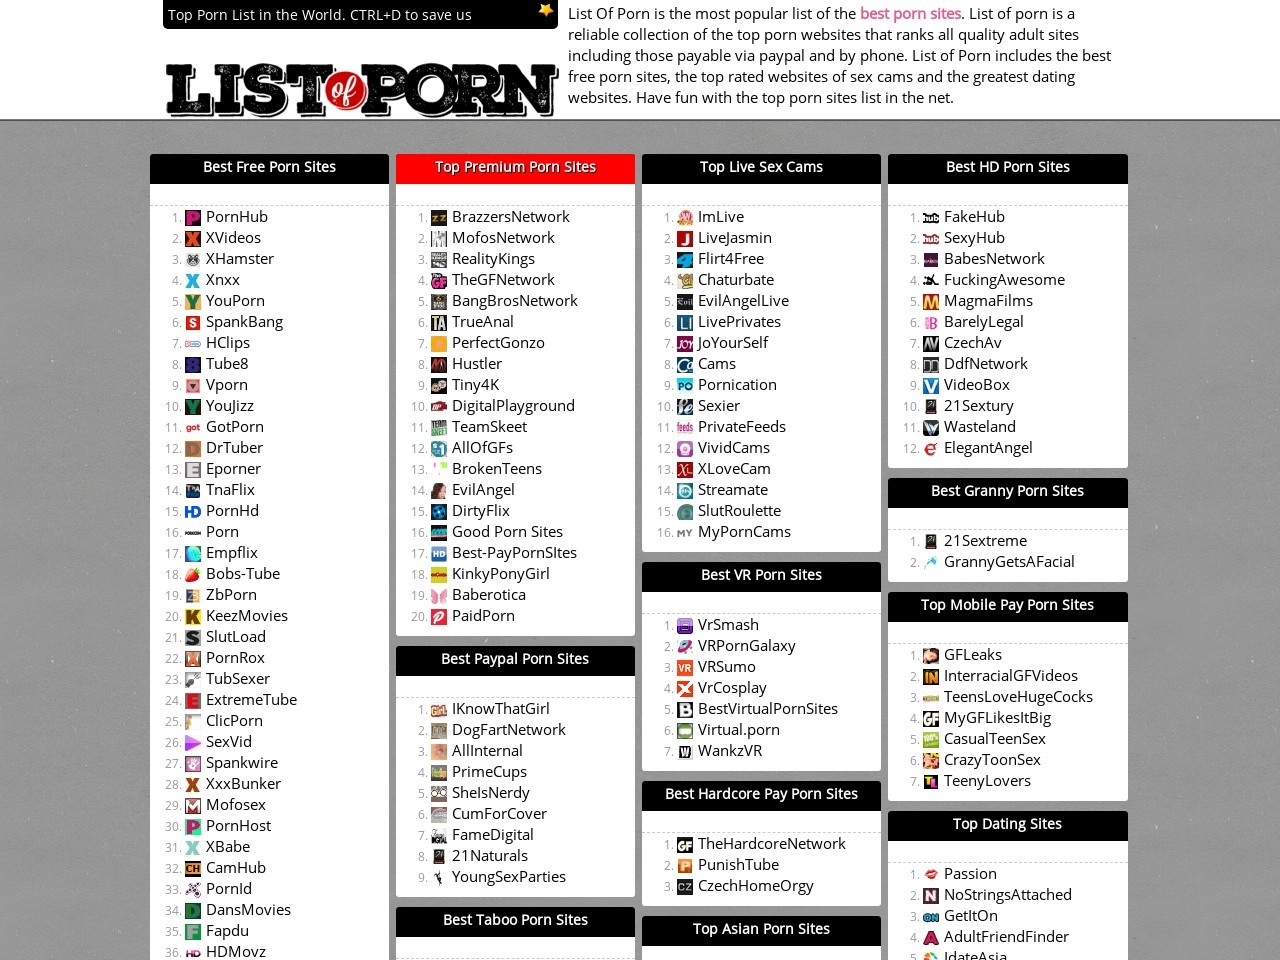 Best Virtual Porn Sites